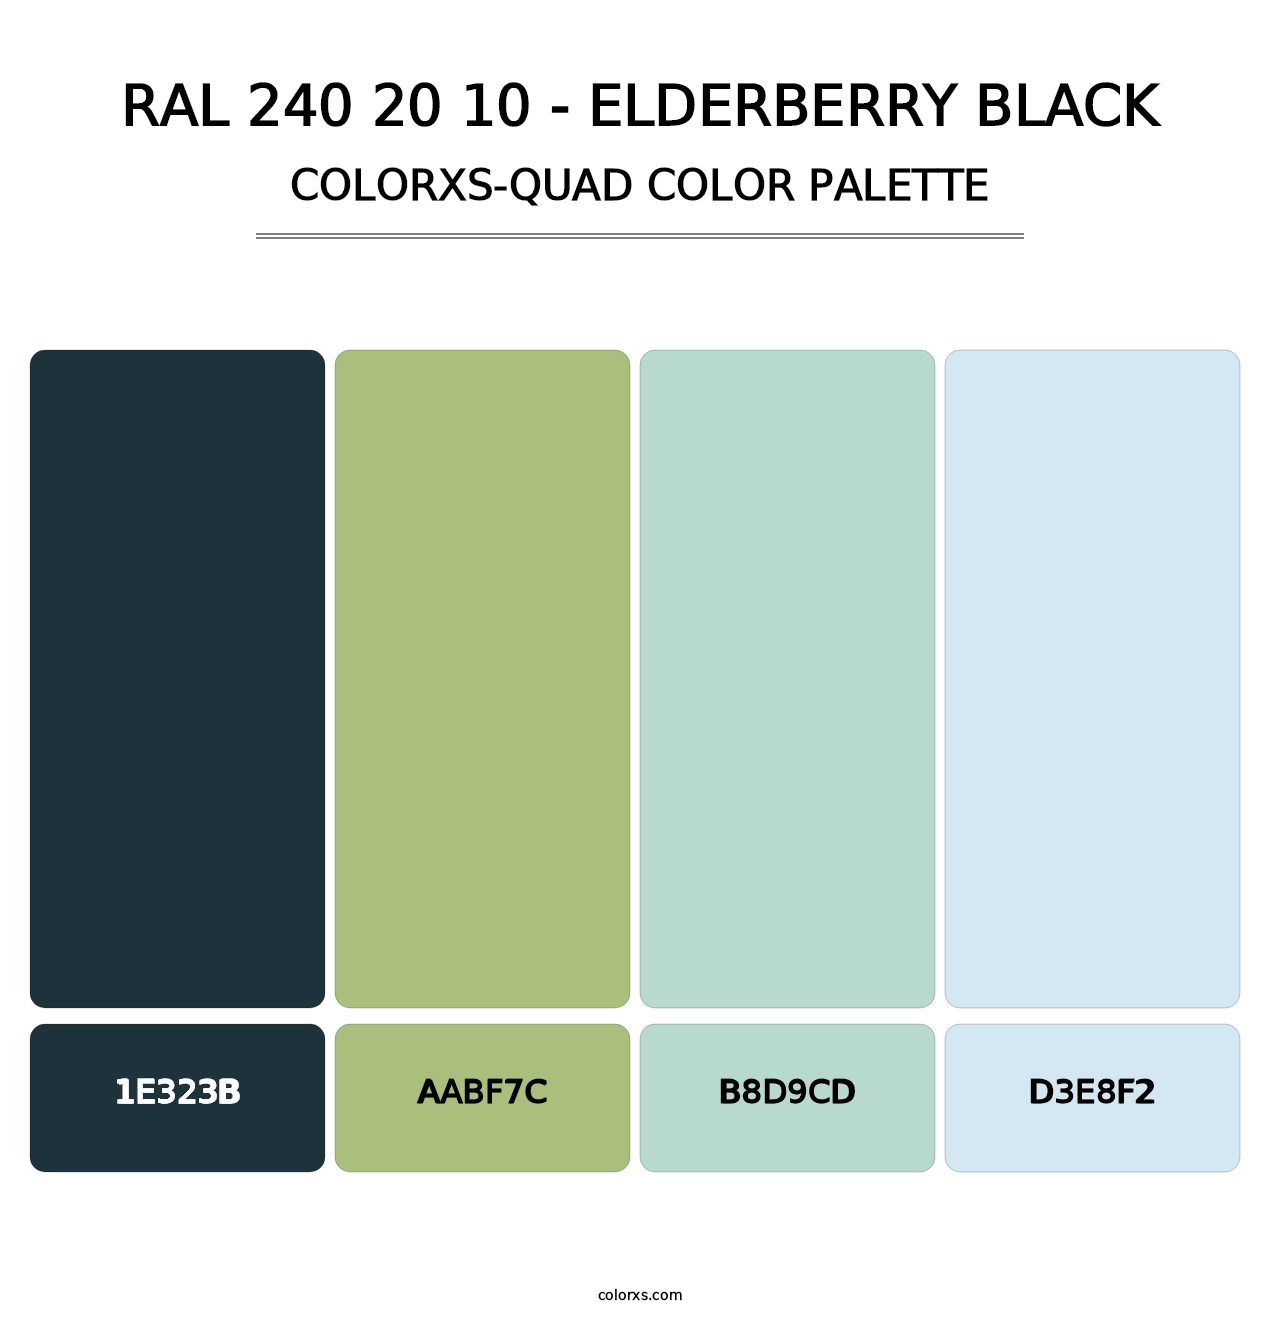 RAL 240 20 10 - Elderberry Black - Colorxs Quad Palette